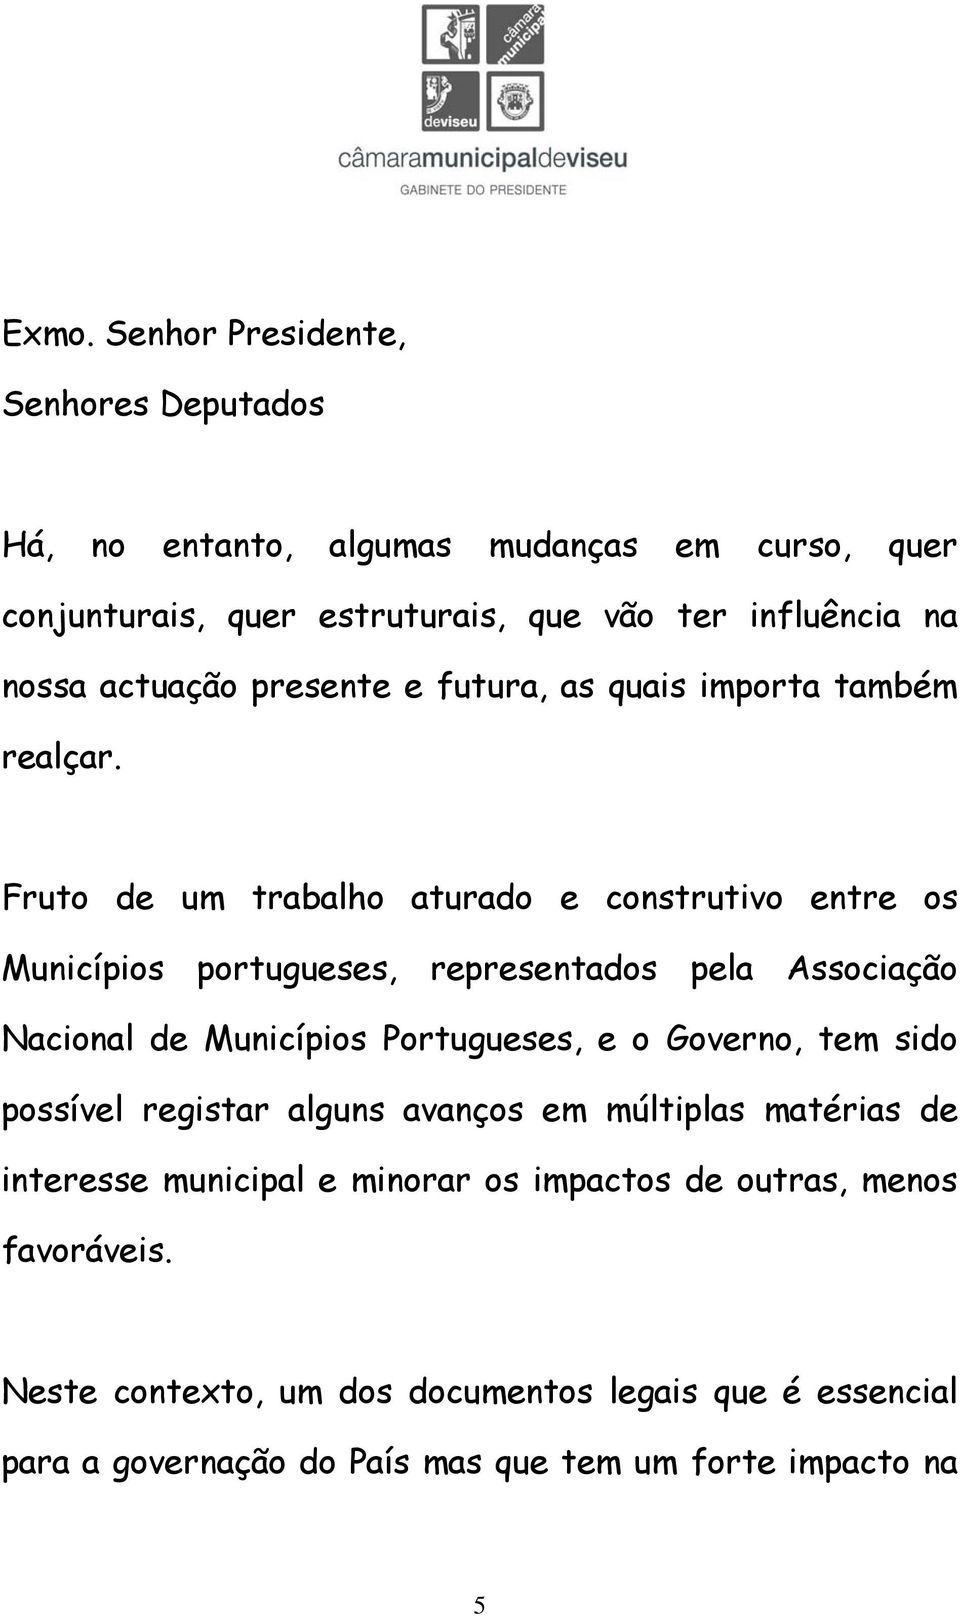 Fruto de um trabalho aturado e construtivo entre os Municípios portugueses, representados pela Associação Nacional de Municípios Portugueses, e o Governo,